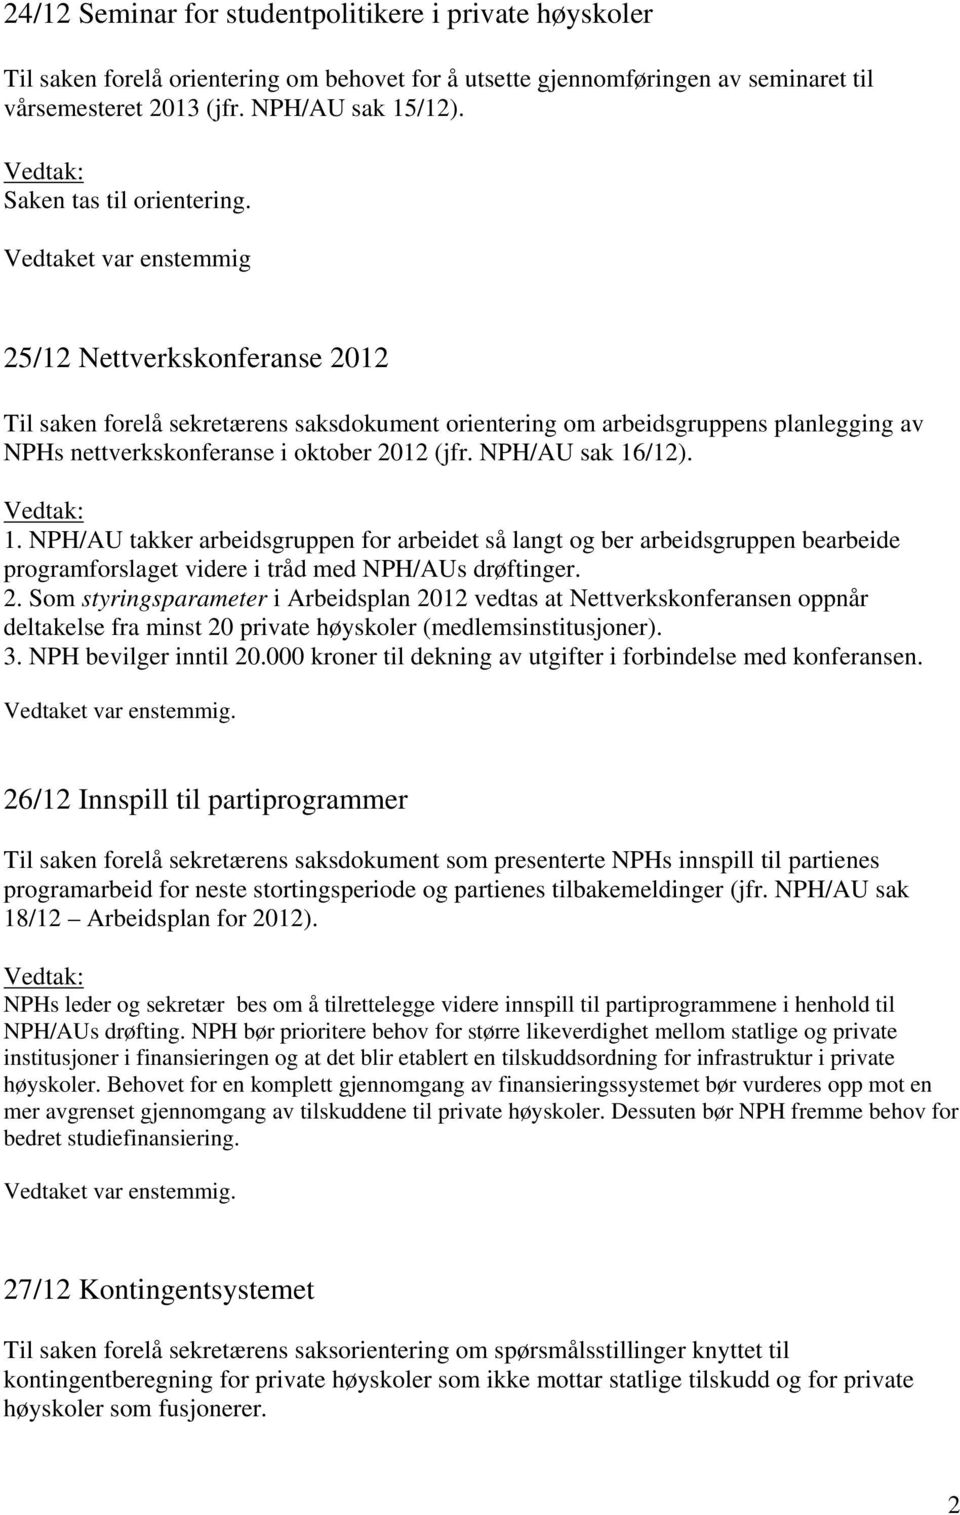 Vedtaket var enstemmig 25/12 Nettverkskonferanse 2012 Til saken forelå sekretærens saksdokument orientering om arbeidsgruppens planlegging av NPHs nettverkskonferanse i oktober 2012 (jfr.